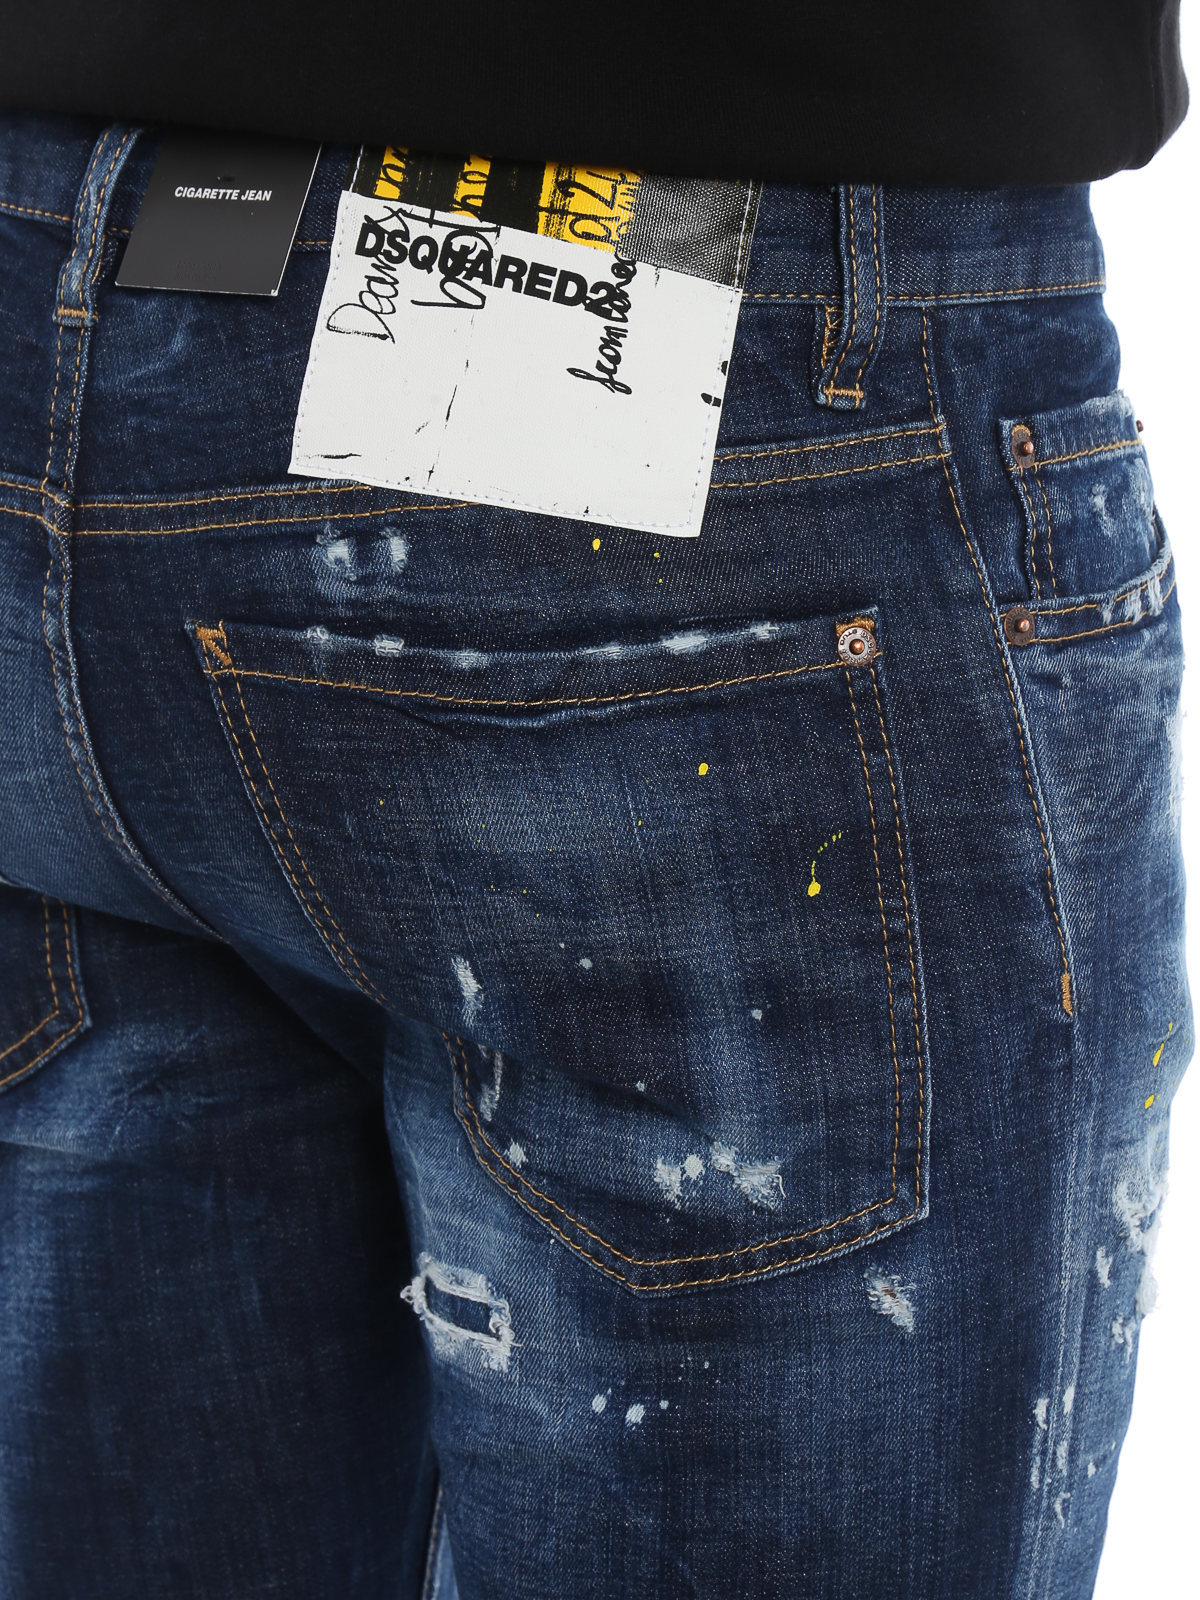 dsquared jeans sale online